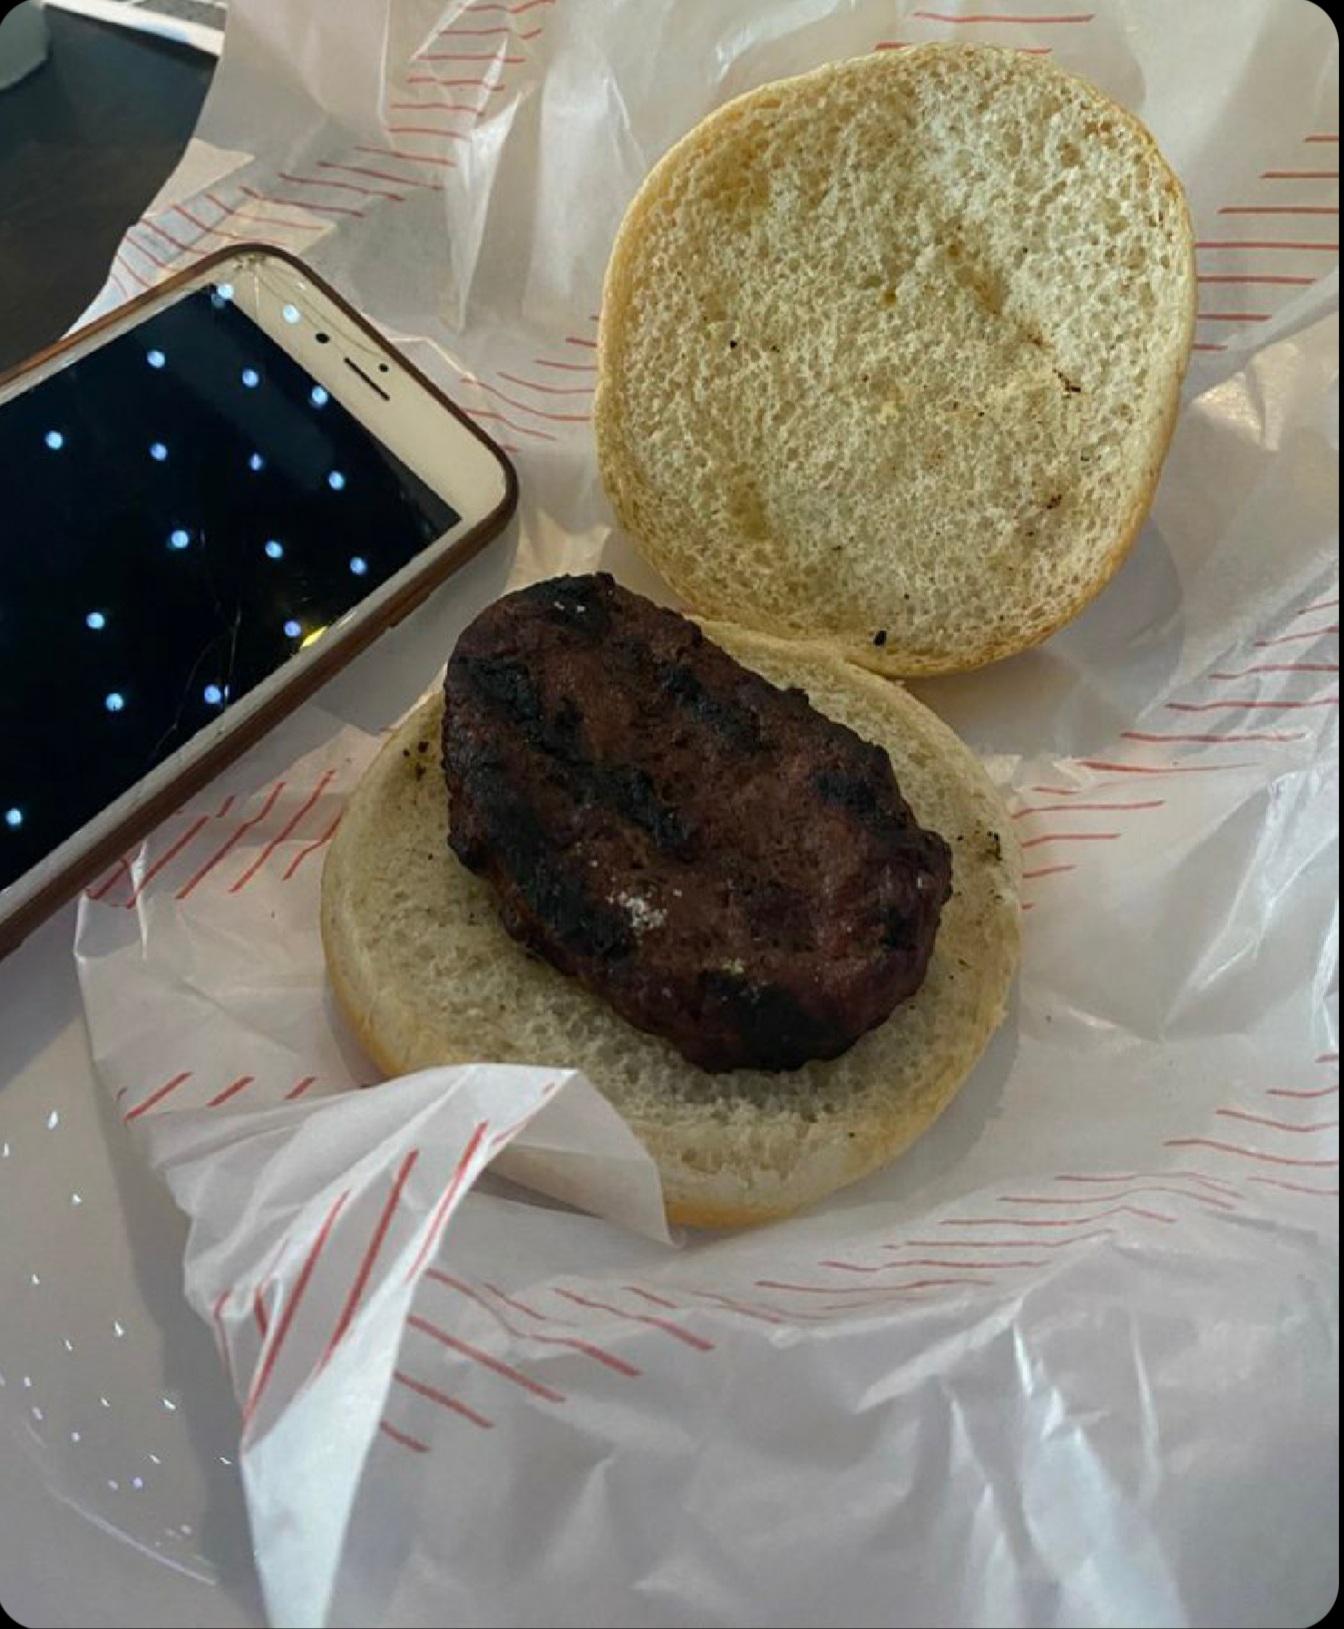 On m’a recommandé d’essayer le nouveau restaurant de hamburgers qui a récemment ouvert. Ce hamburger m’a coûté 6,95 £.